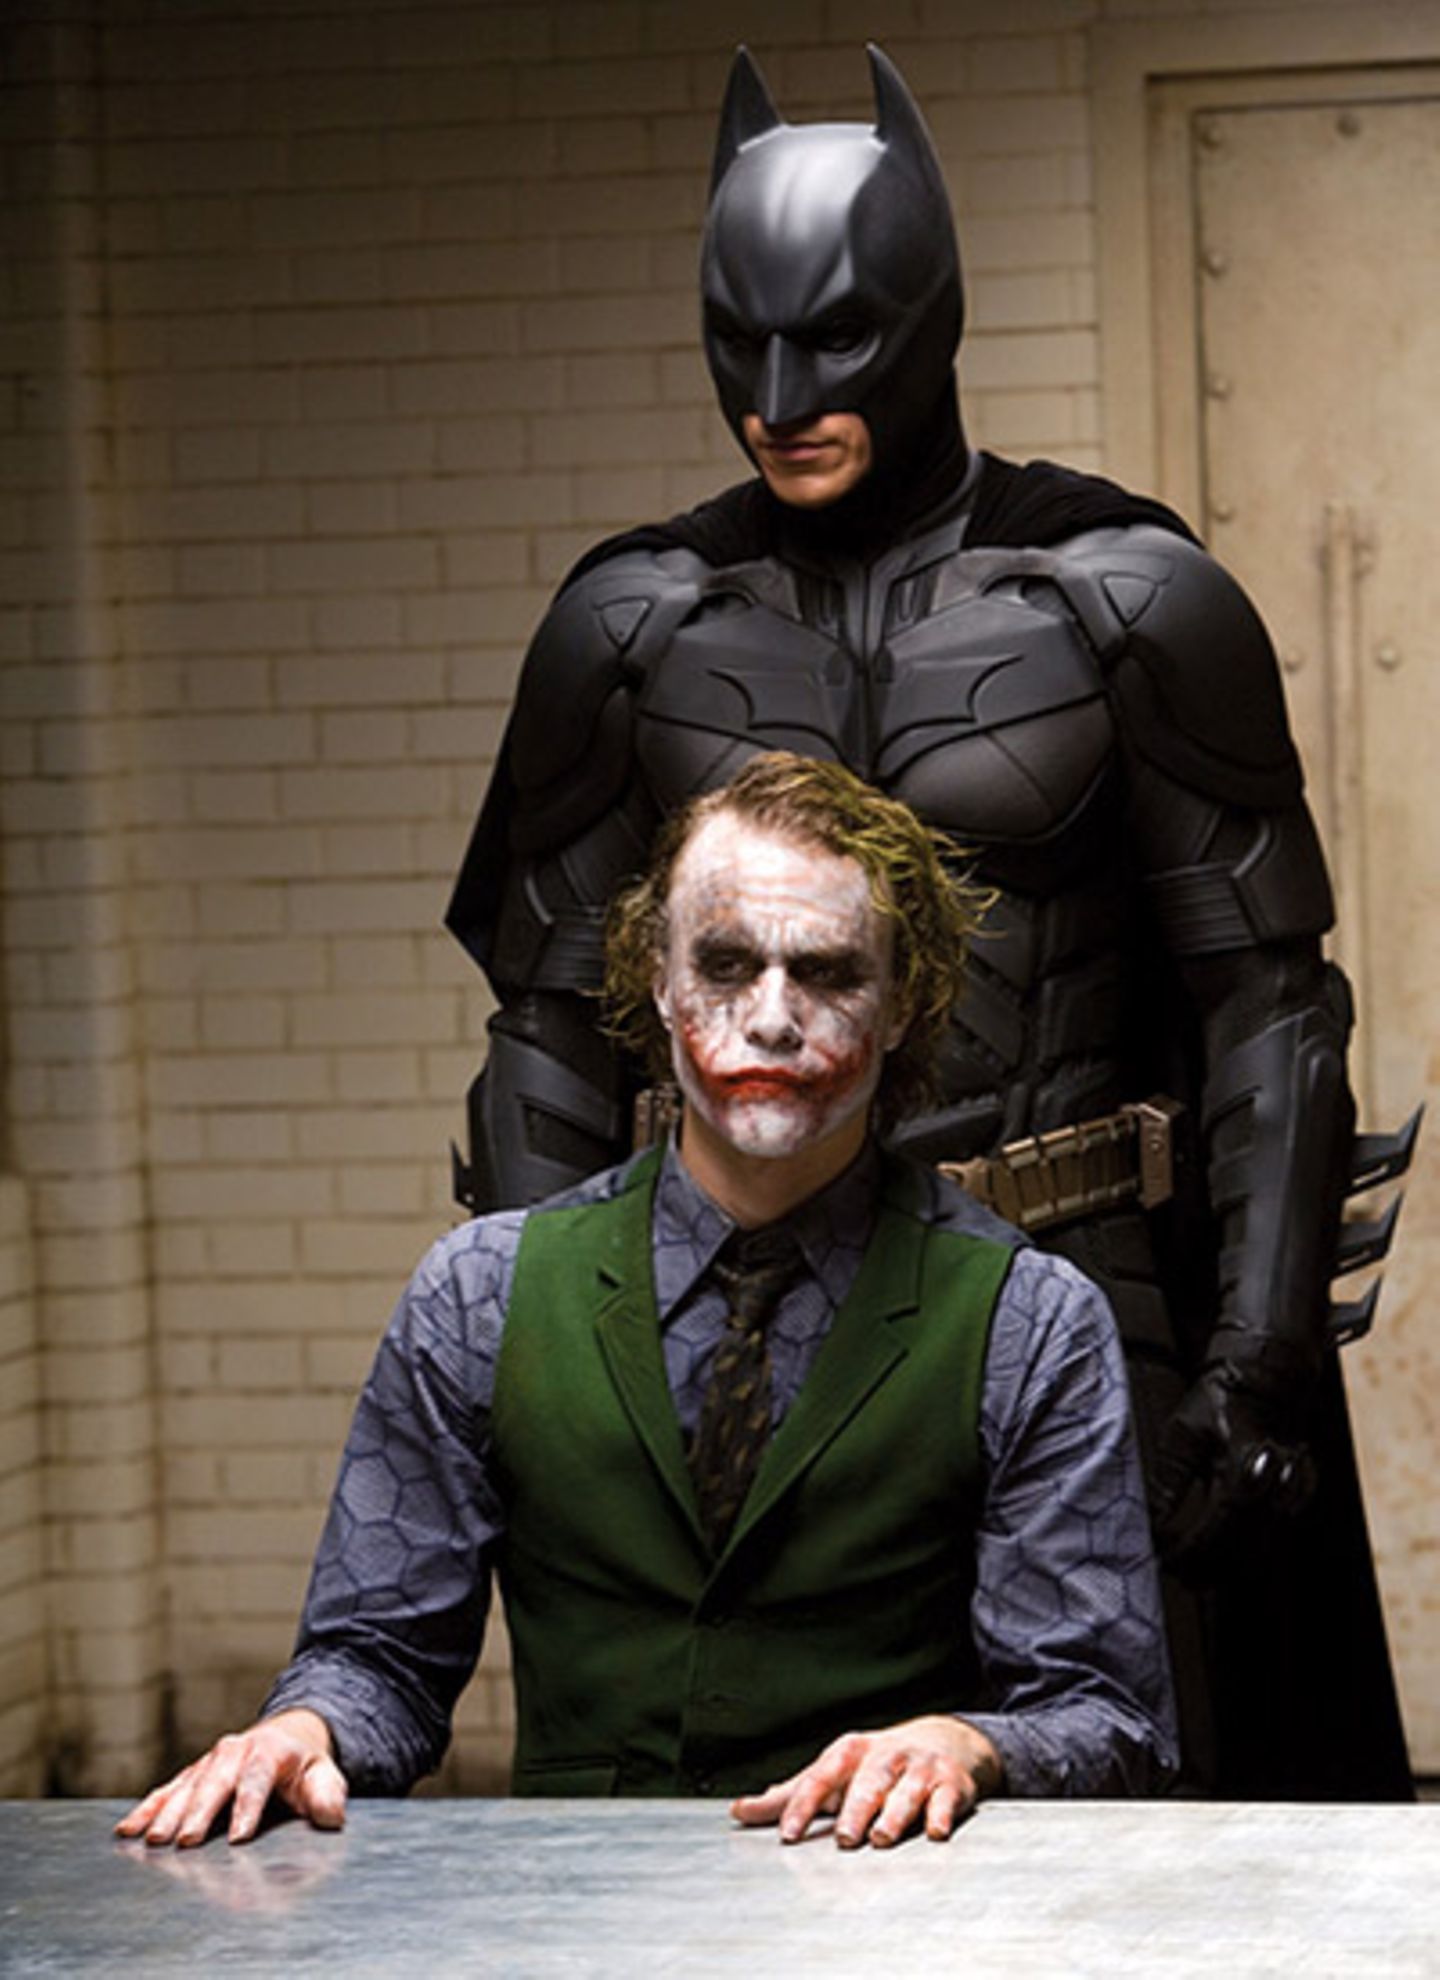 Selten hat das Spiel von Gut und Böse soviele Facetten bekommen wie bei "Batman - The Dark Knight". 2008 bekam Heath Ledger Post